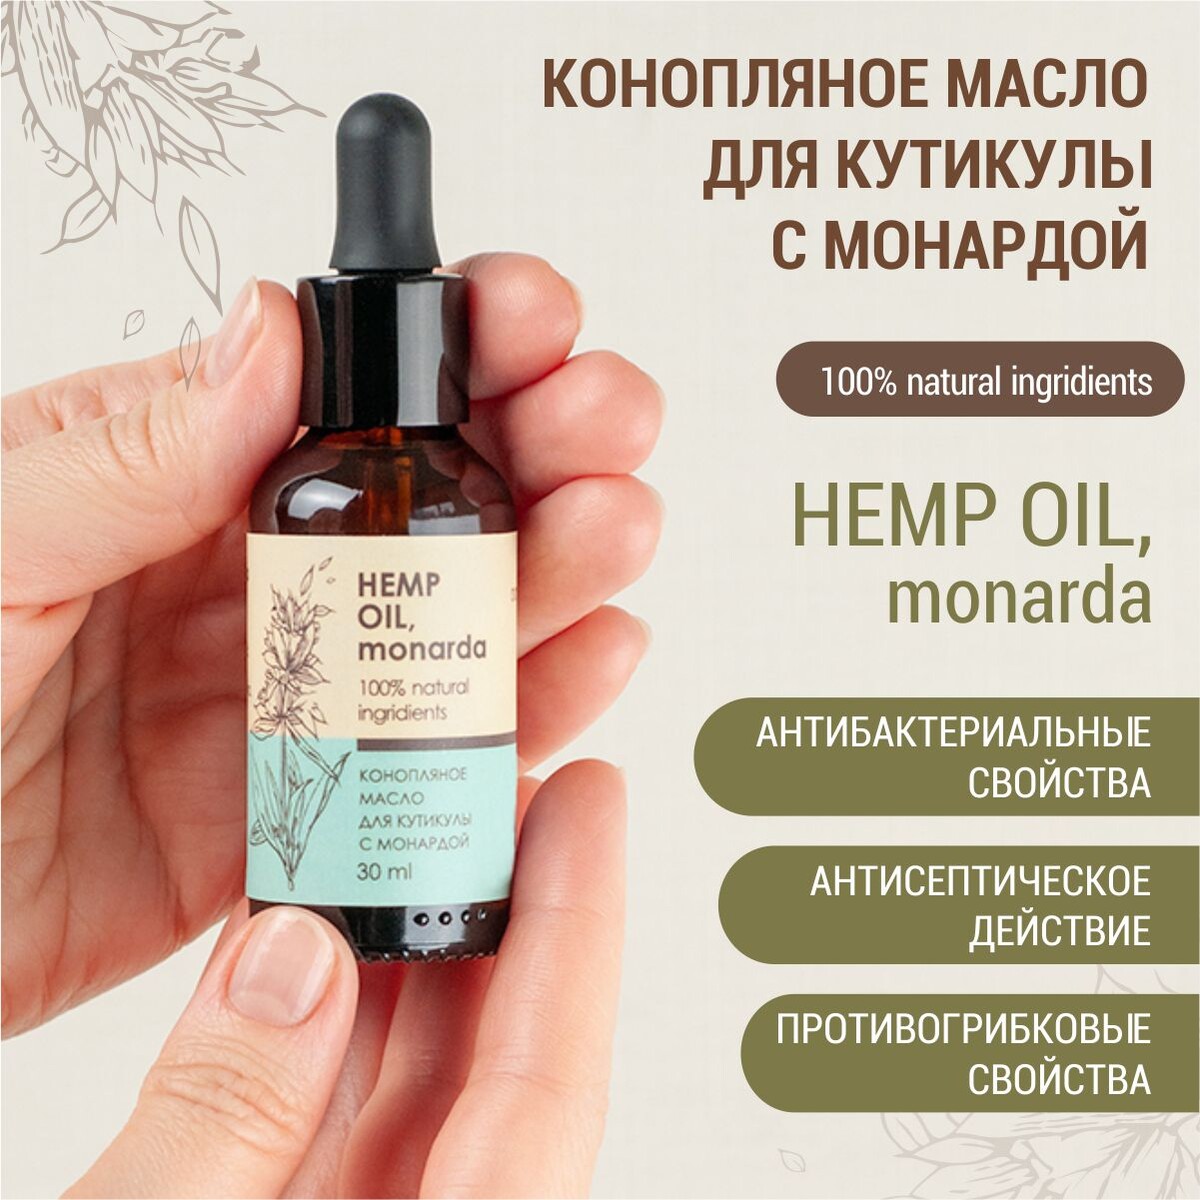 Конопляное масло для кутикулы с монардой (hemp oil, monarda) Алфит Плюс